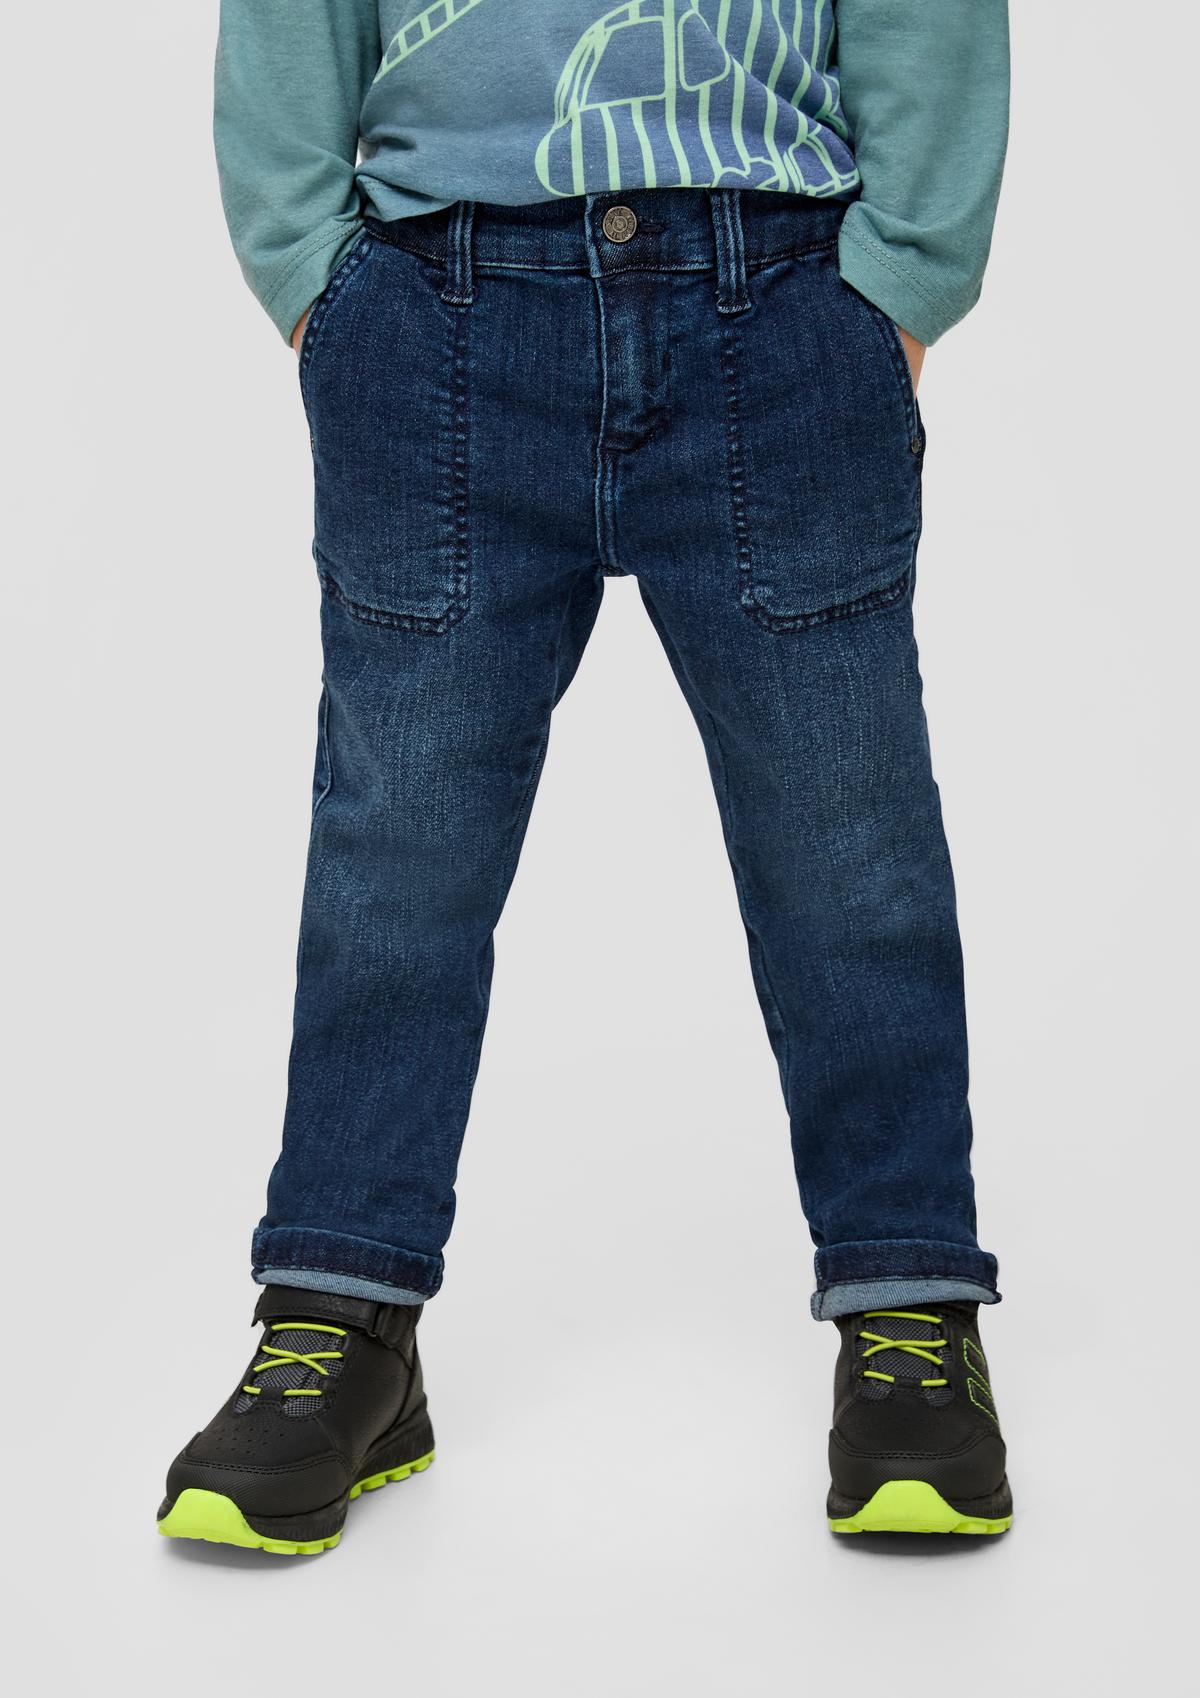 Pelle: jeans met verstelbare band